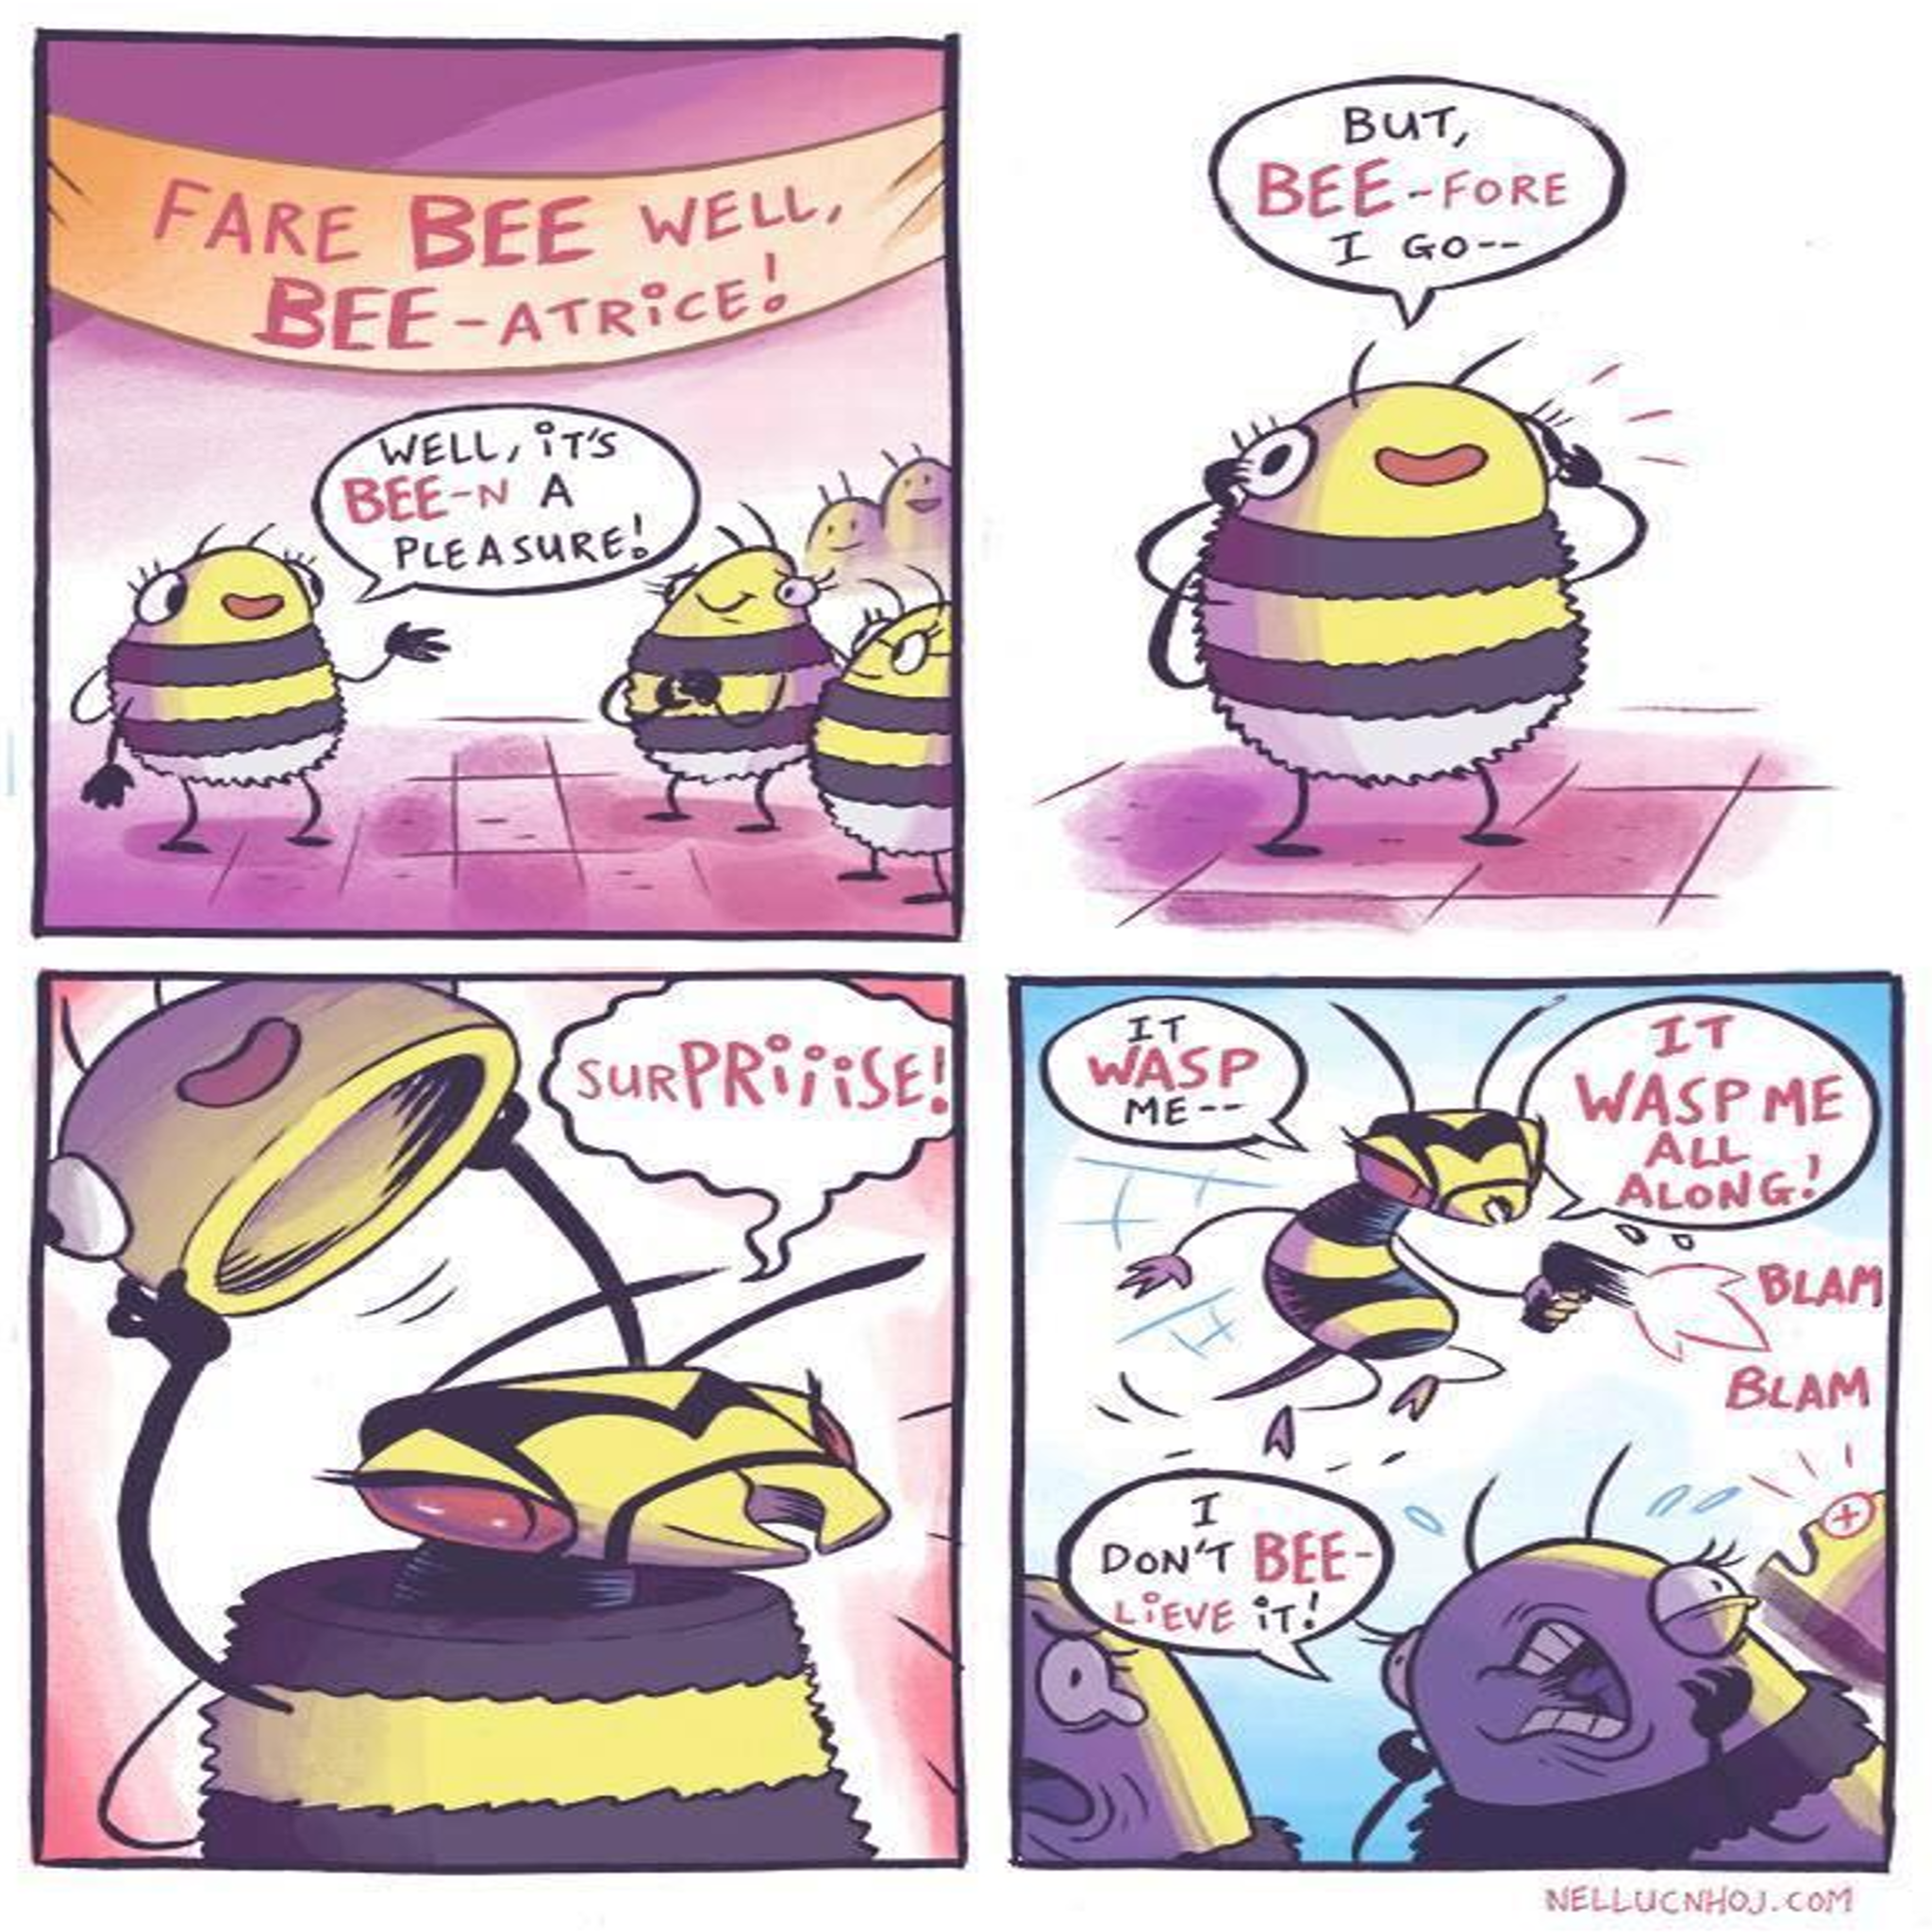 It be bee-n a pleasure.